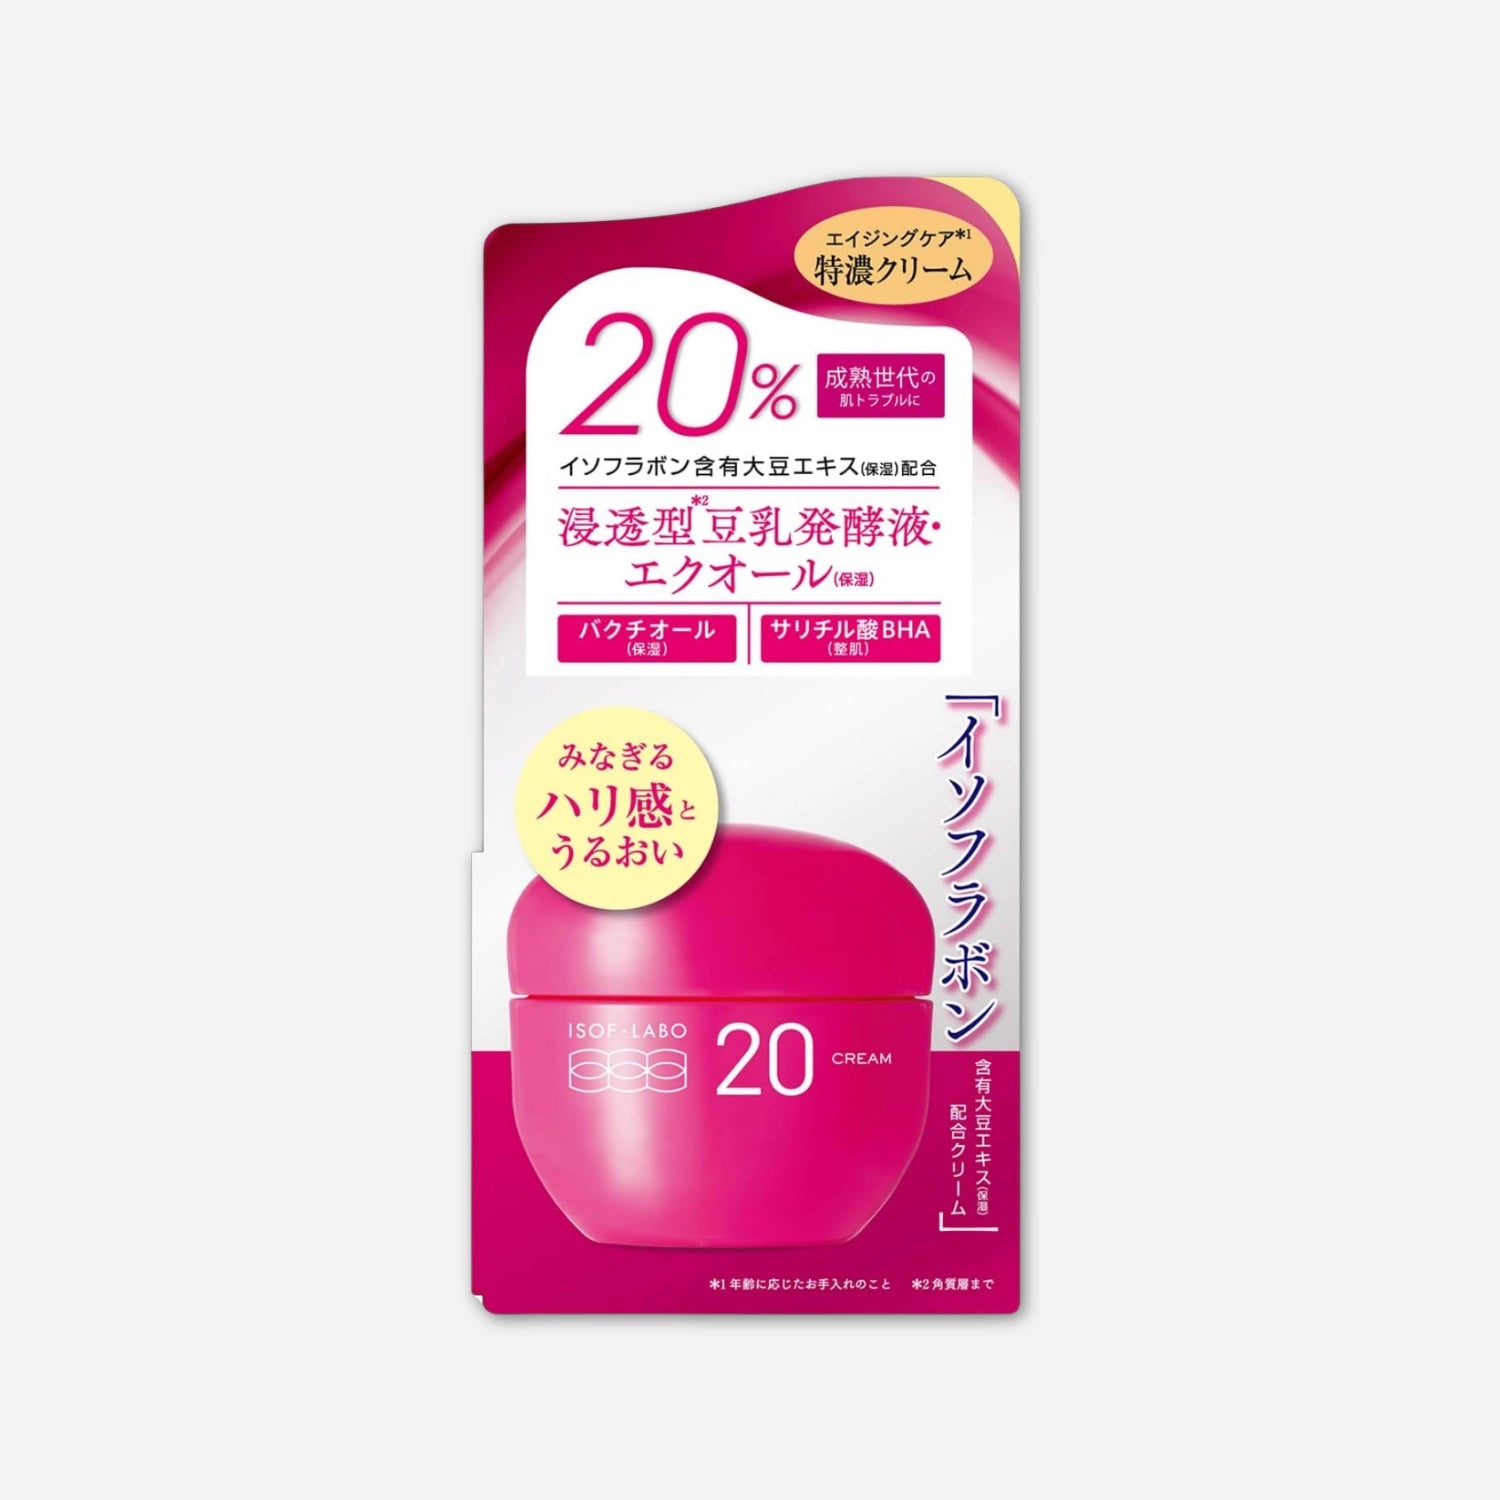 Meishoku ISOF-LABO 20 Cream 40g